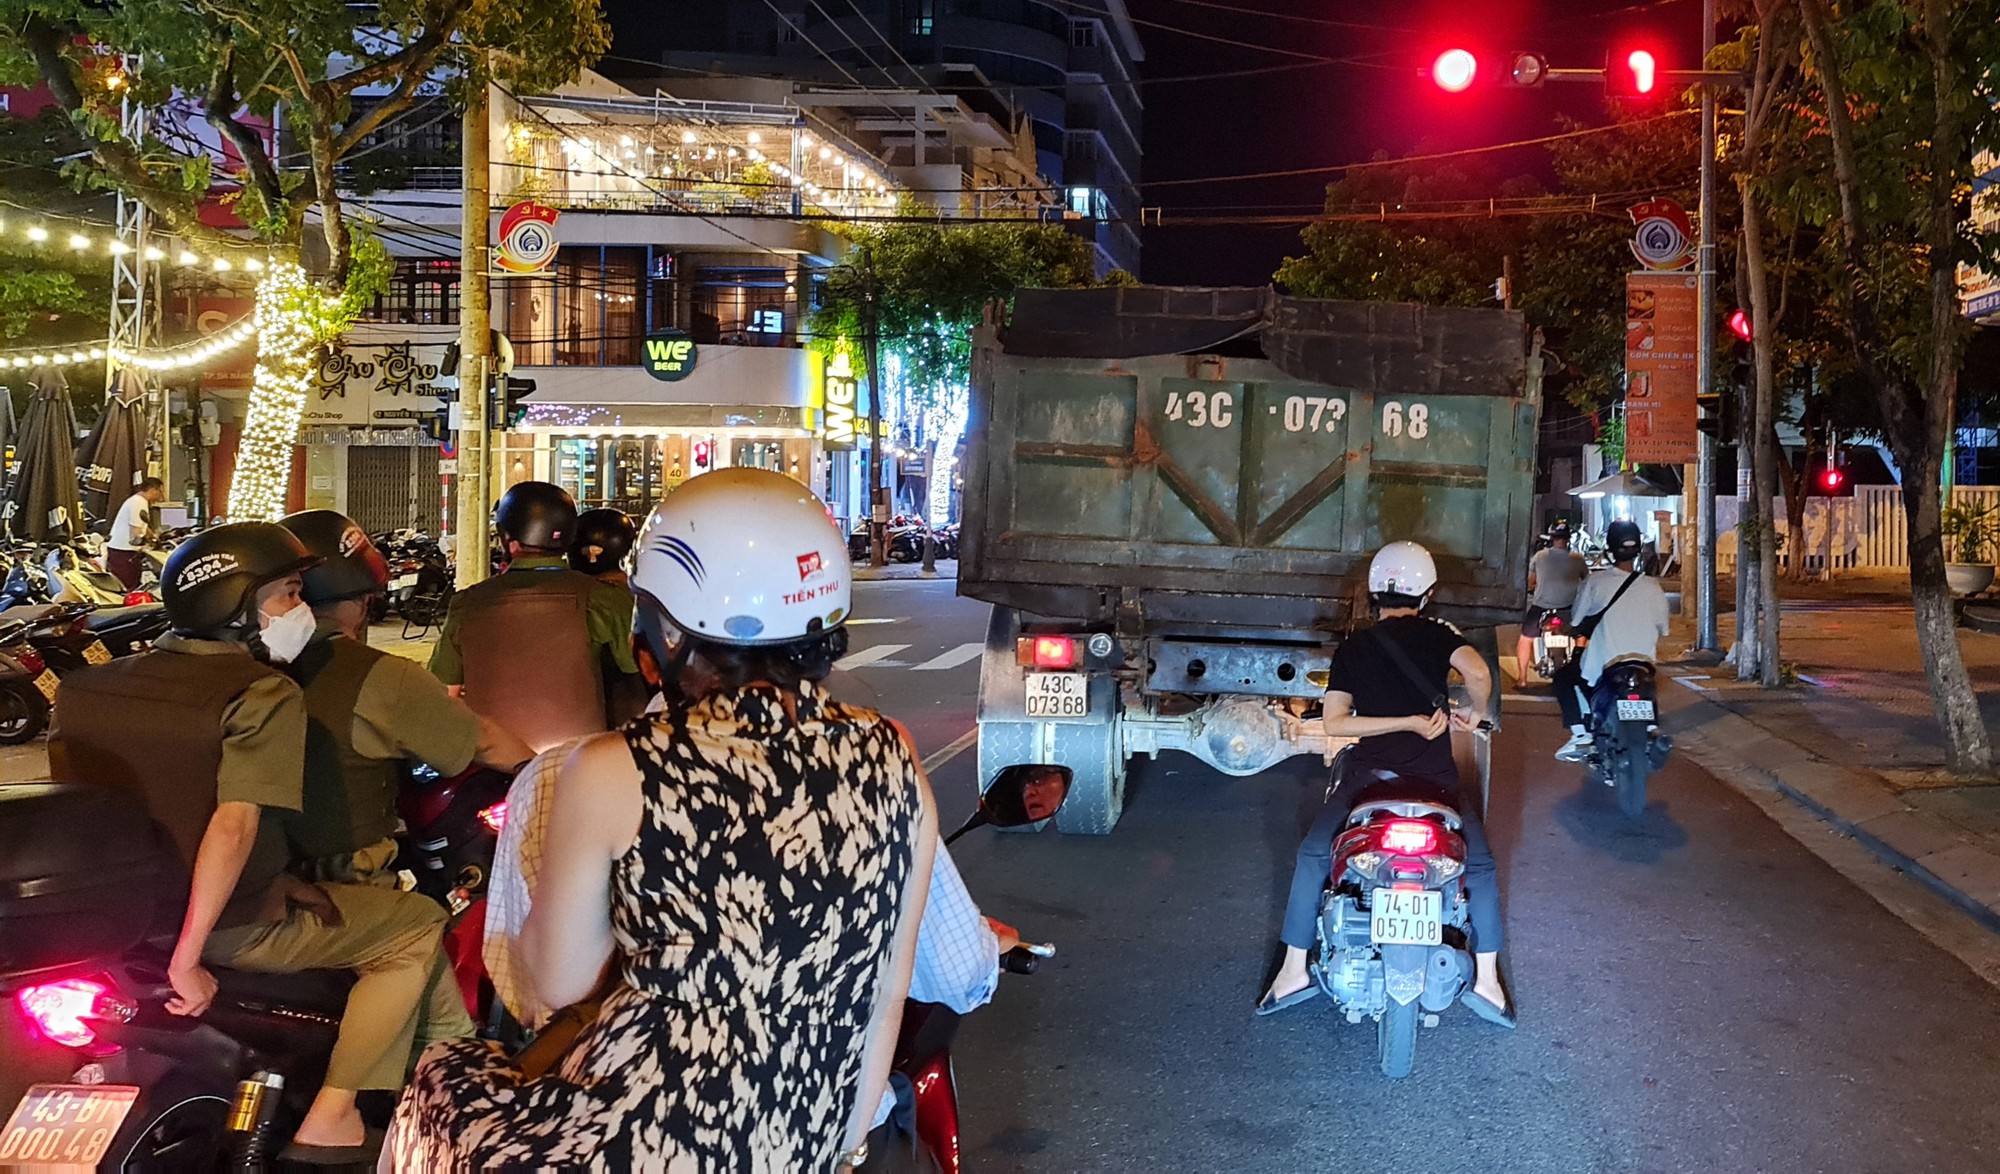 Đoàn xe tải trọng lớn lộng hành vào đường cấm ngay trung tâm Đà Nẵng - Ảnh 7.